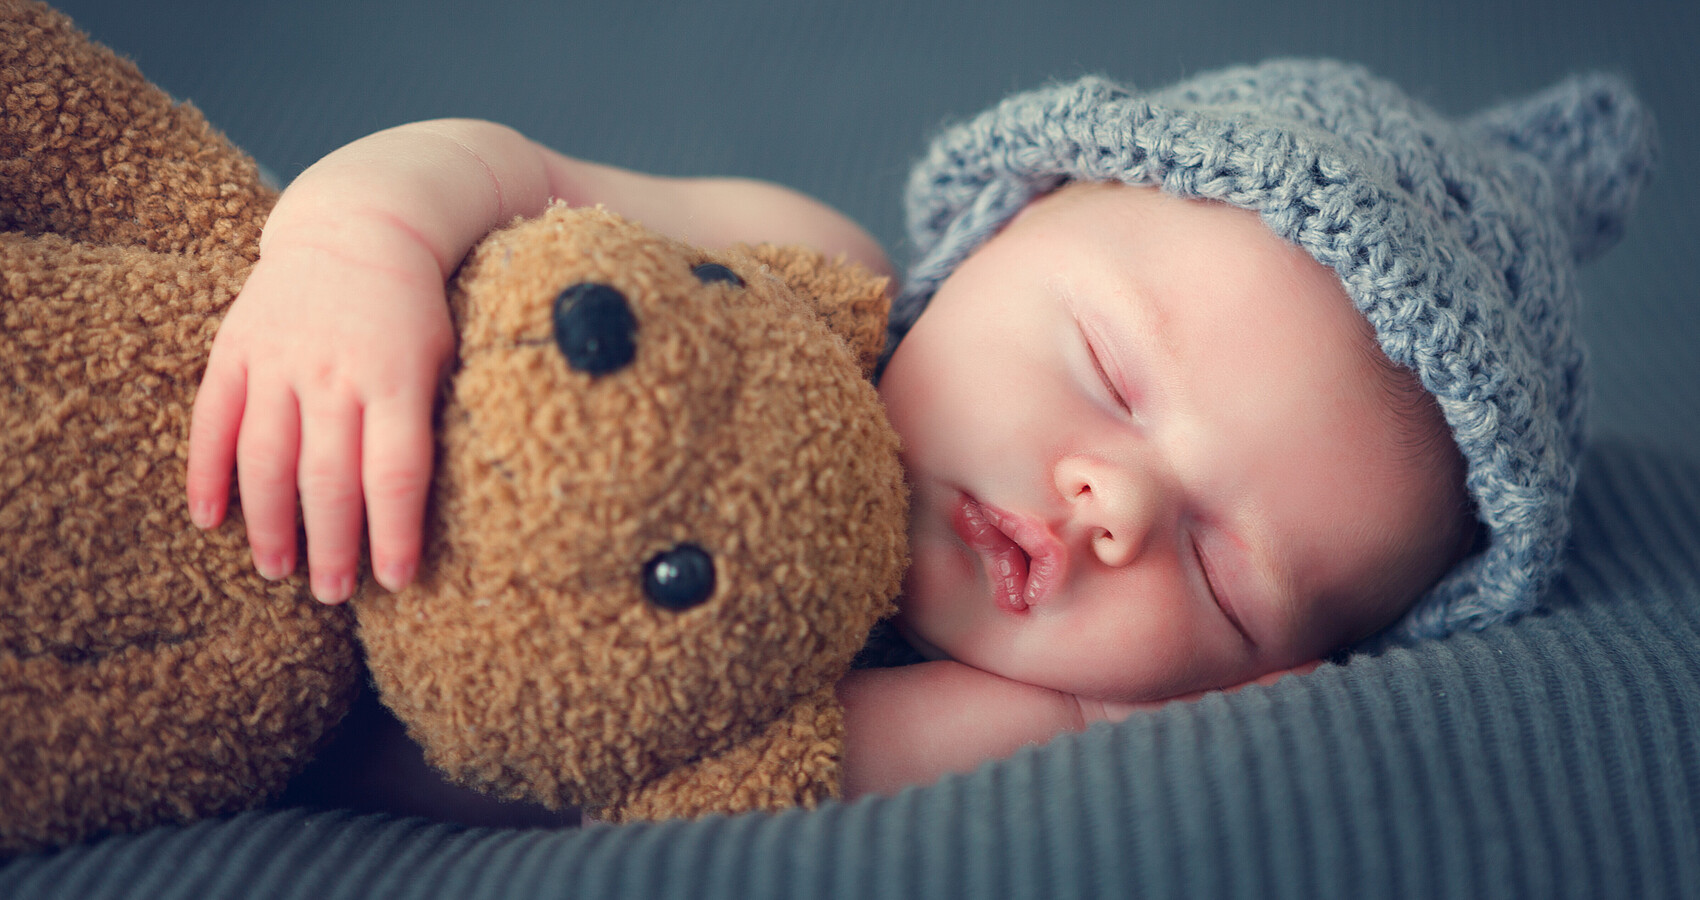 Man sieht ein schlafendes neugeborenes Baby mit einer blauen Mütze und einem Teddy im Arm